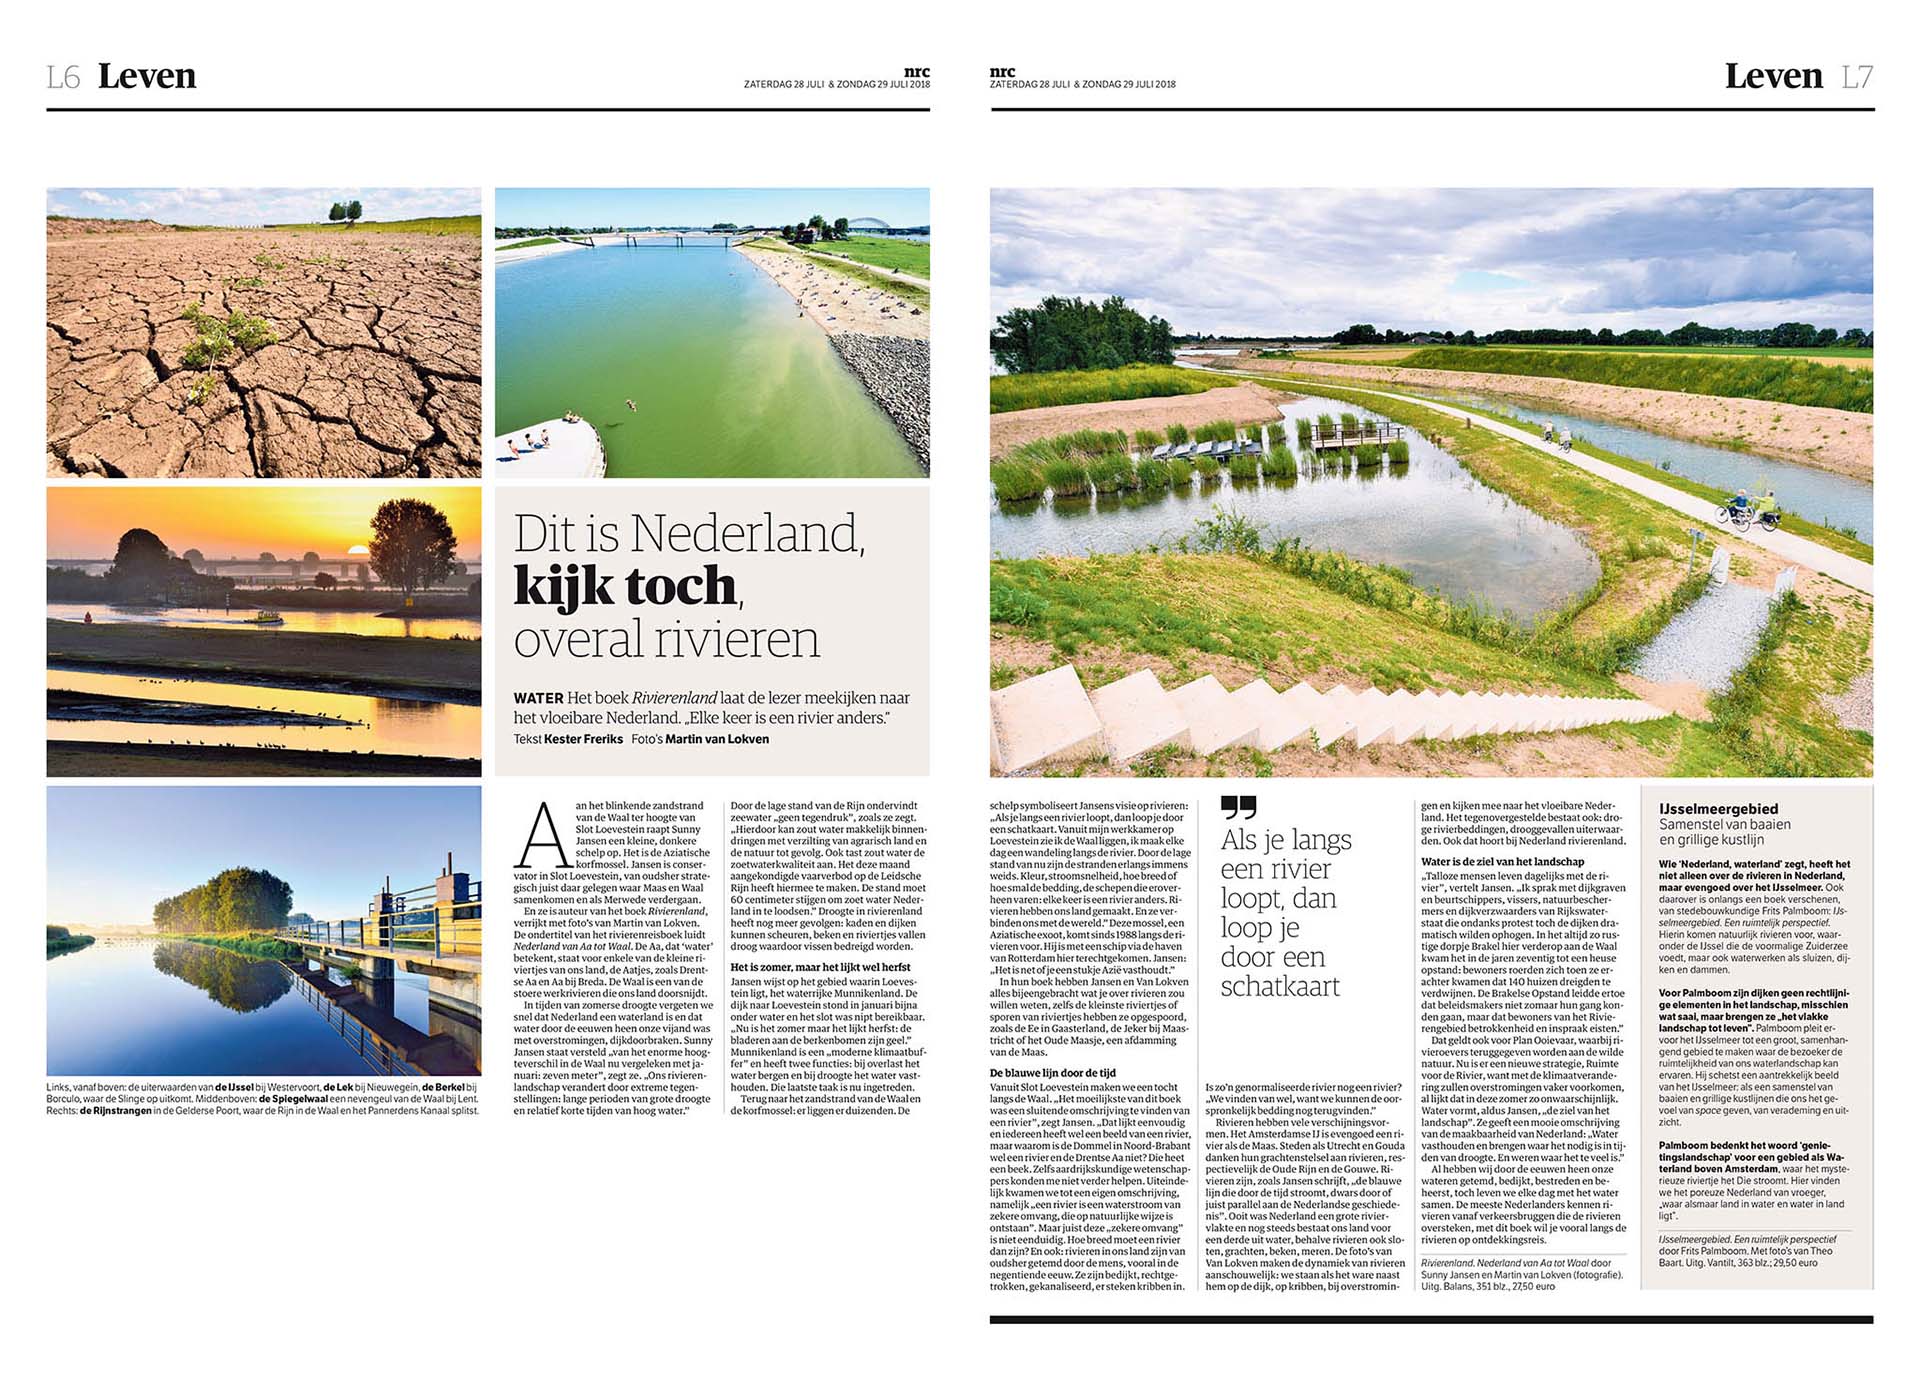 Artikel in NRC van 28 juli 2018 over het boek Rivierenland, Nederland van Aa tot Waal.